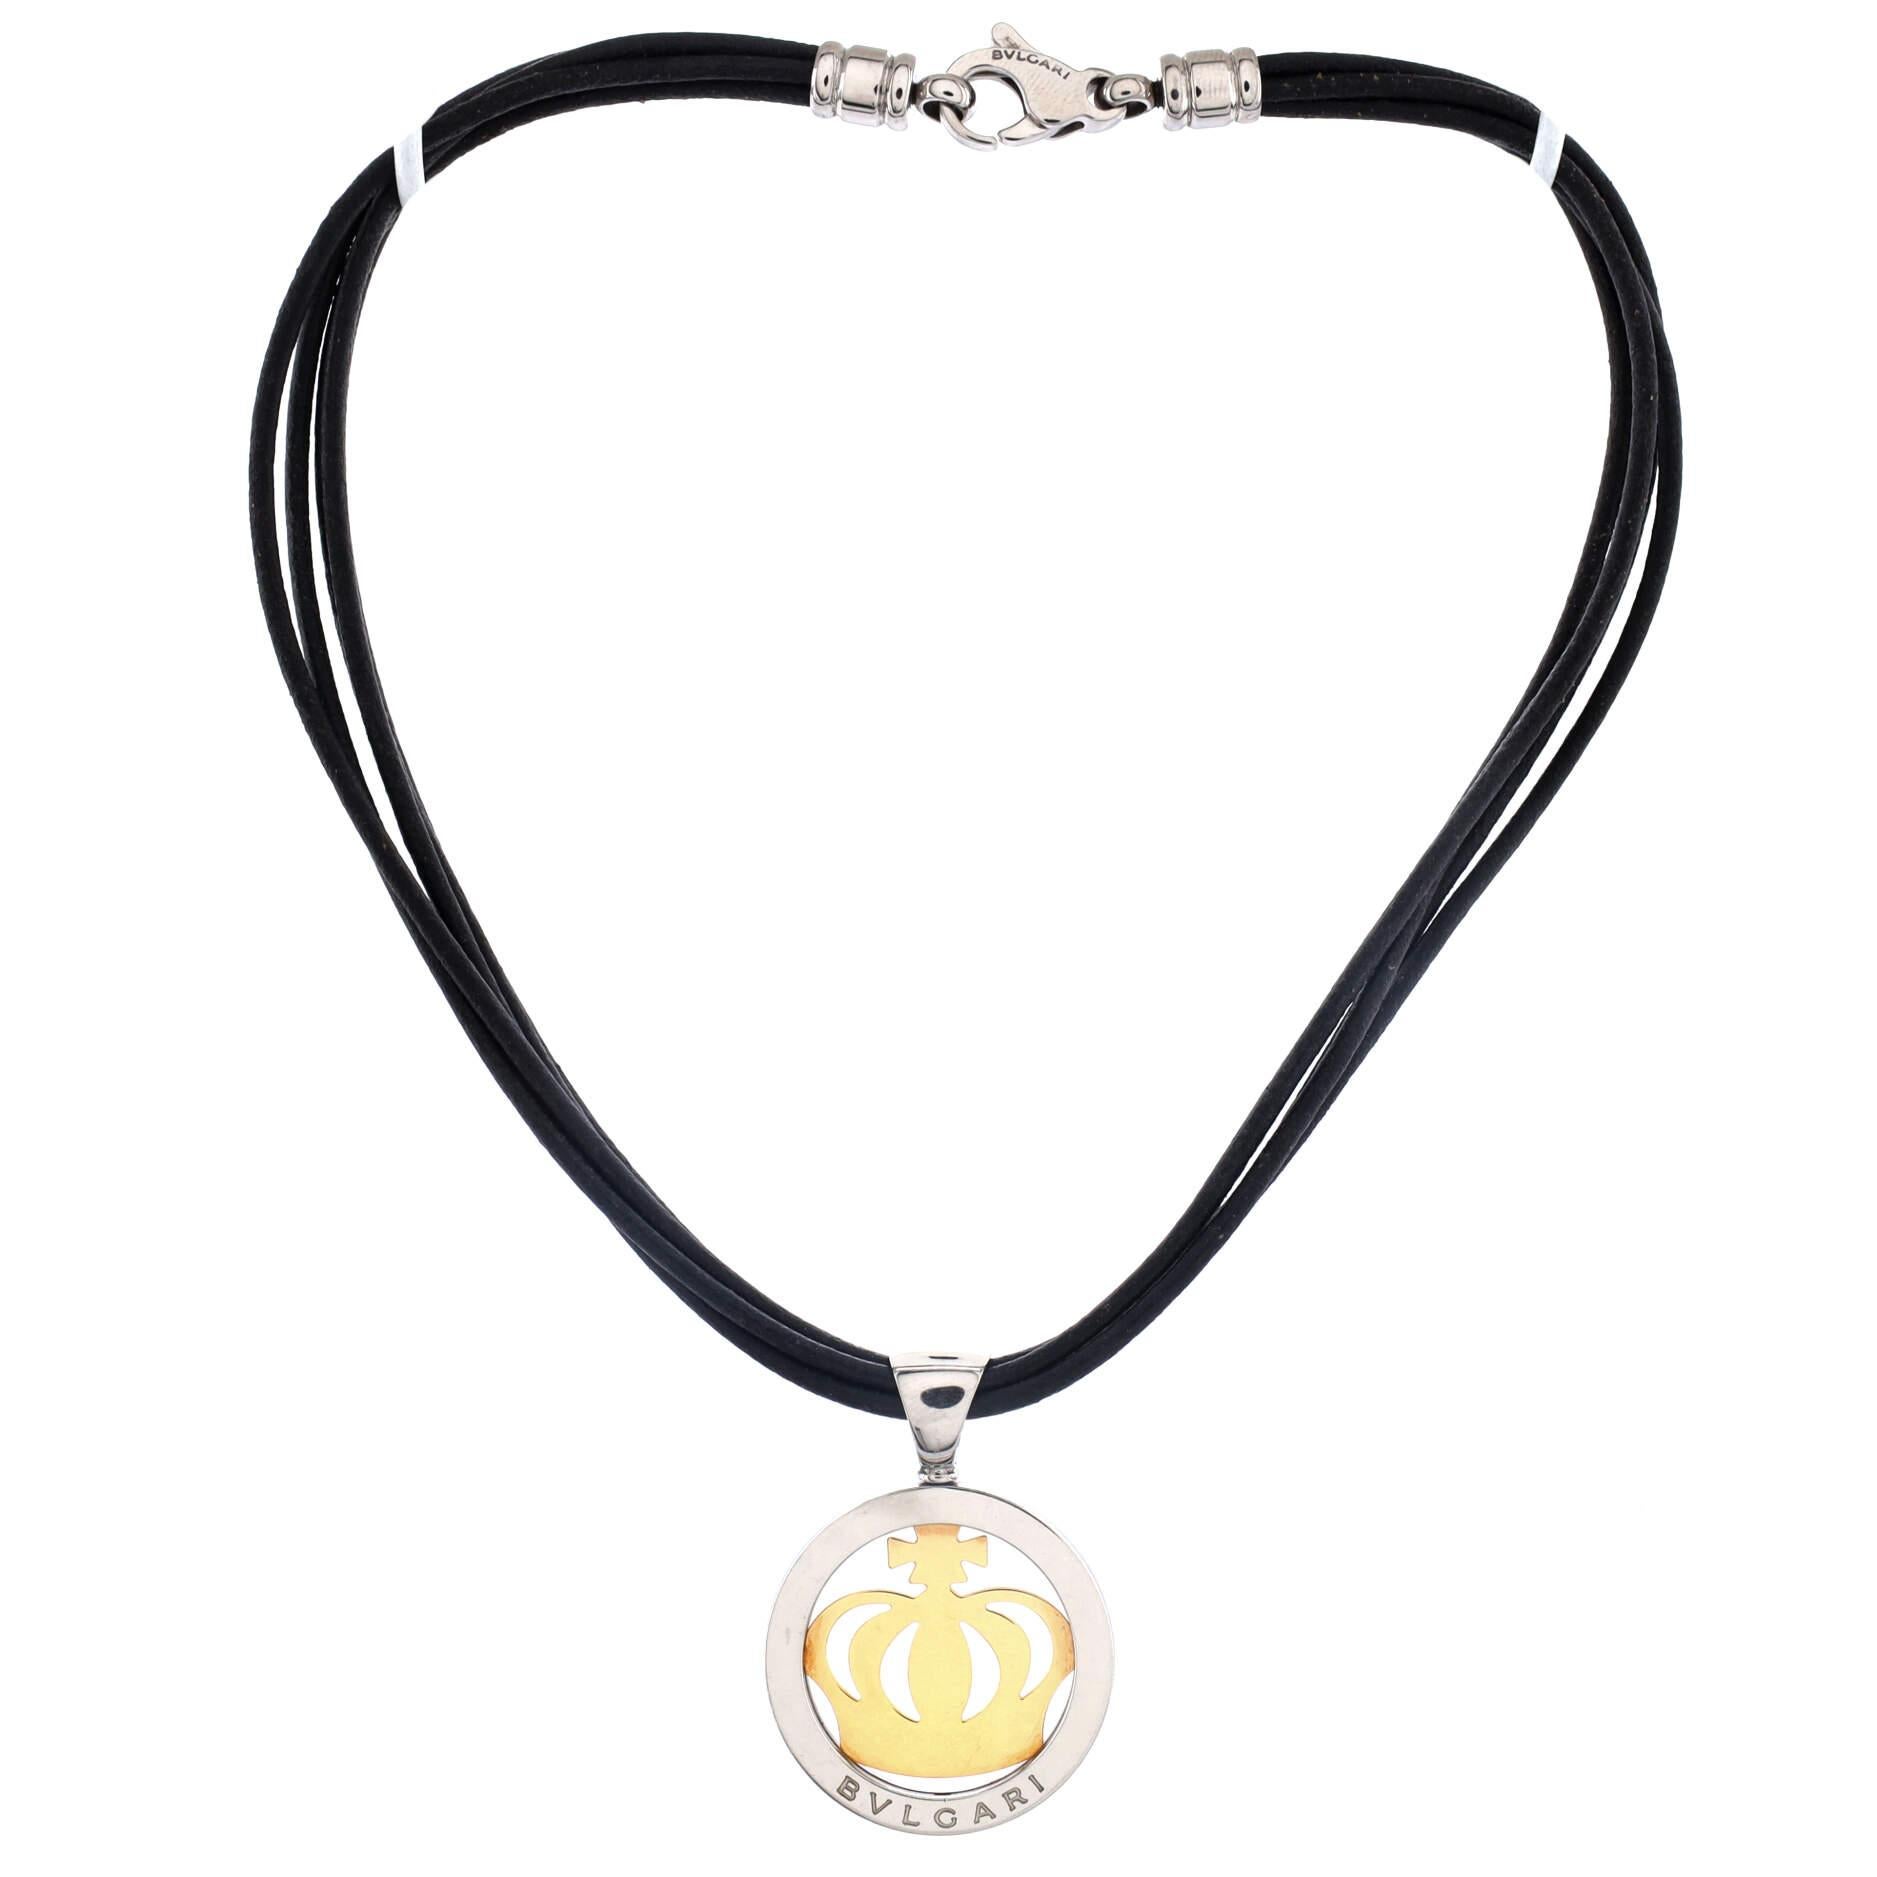 bvlgari chain necklace